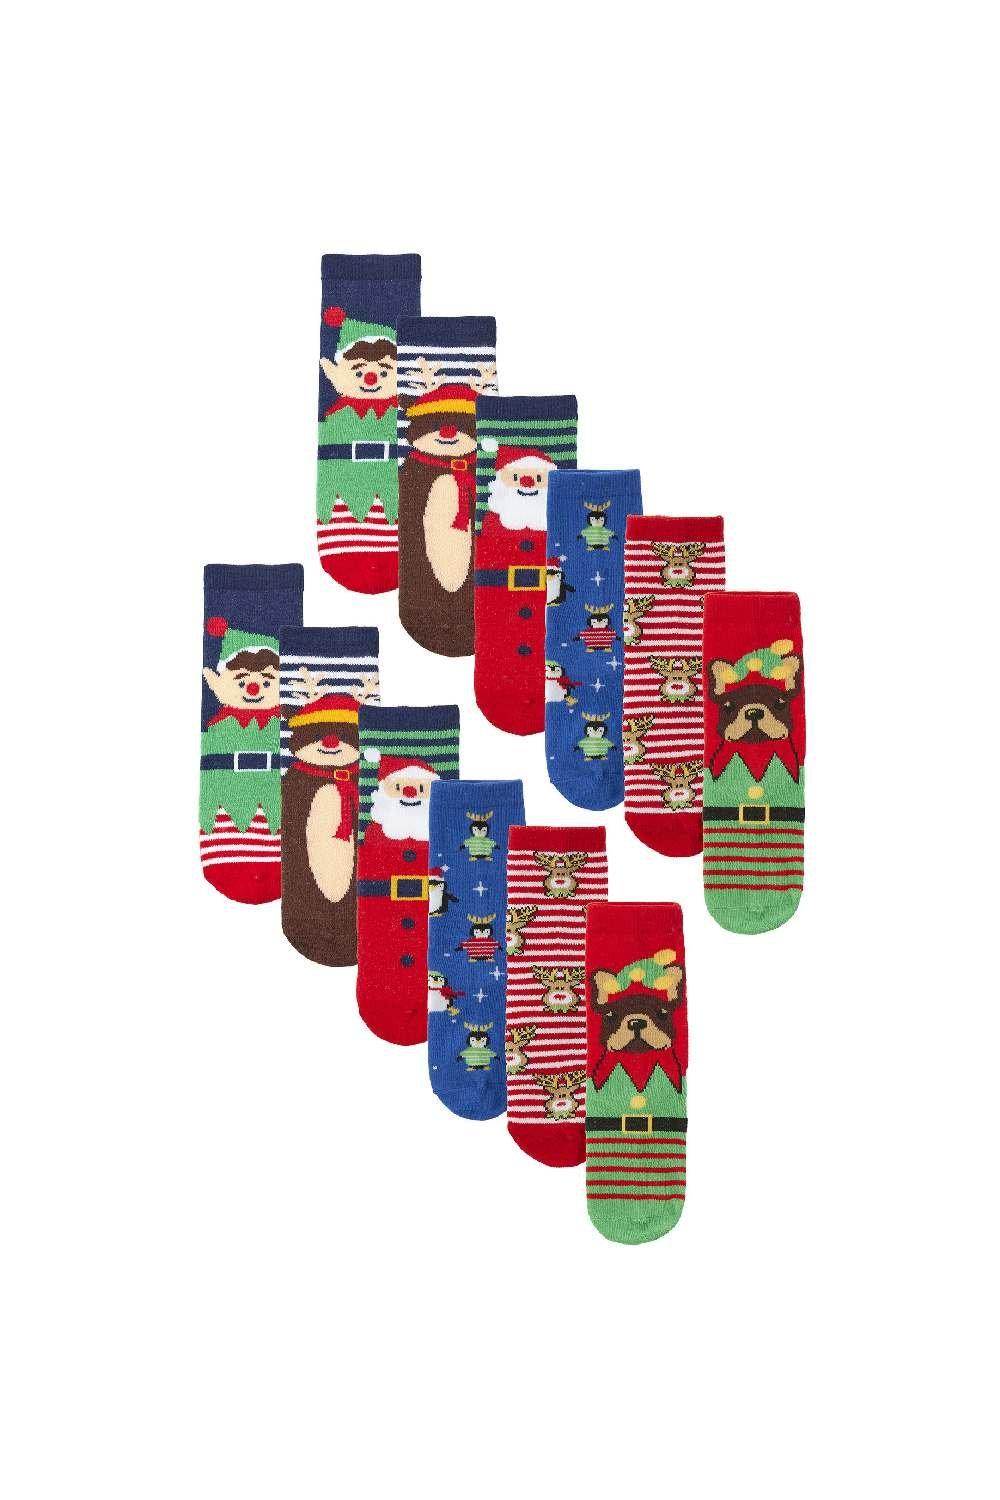 12 Pair Multipack Christmas Socks - Novelty Cotton Design